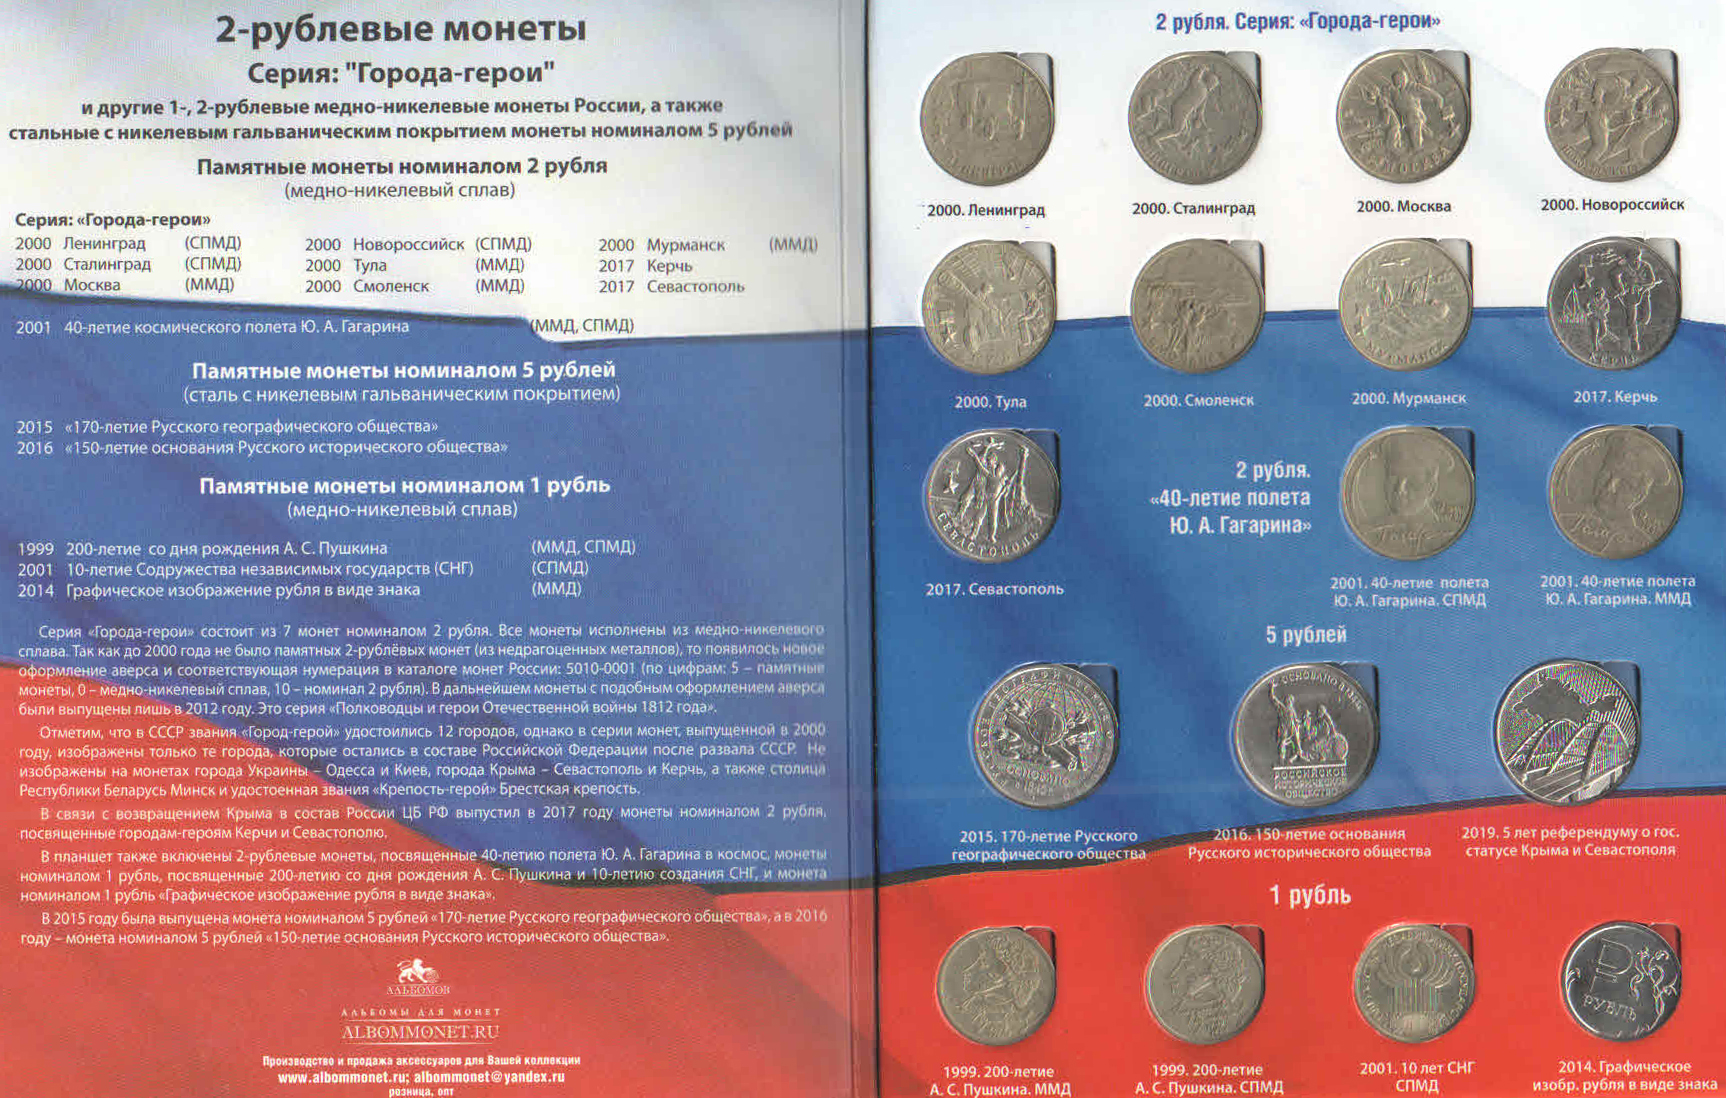 5 рублей имеющие ценность. Юбилейные 10 рублевые монеты 1997. Альбом для монет 1,2,5 рублей. Юбилейные 2 рублевые монеты. Альбом монт 10 рублевых монет юбилейных.